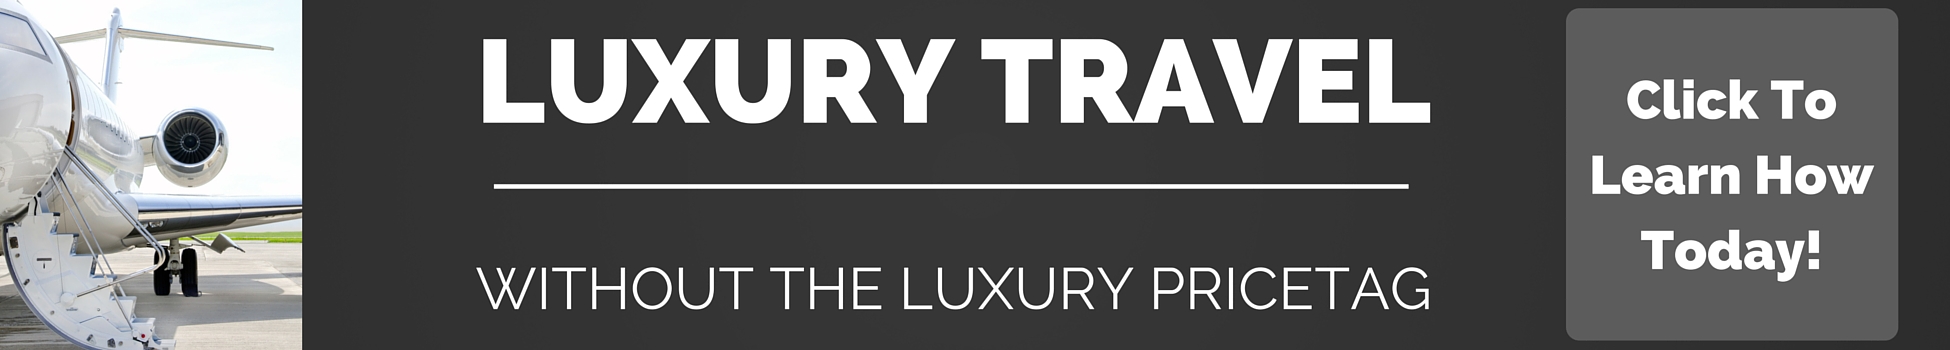 luxury travel